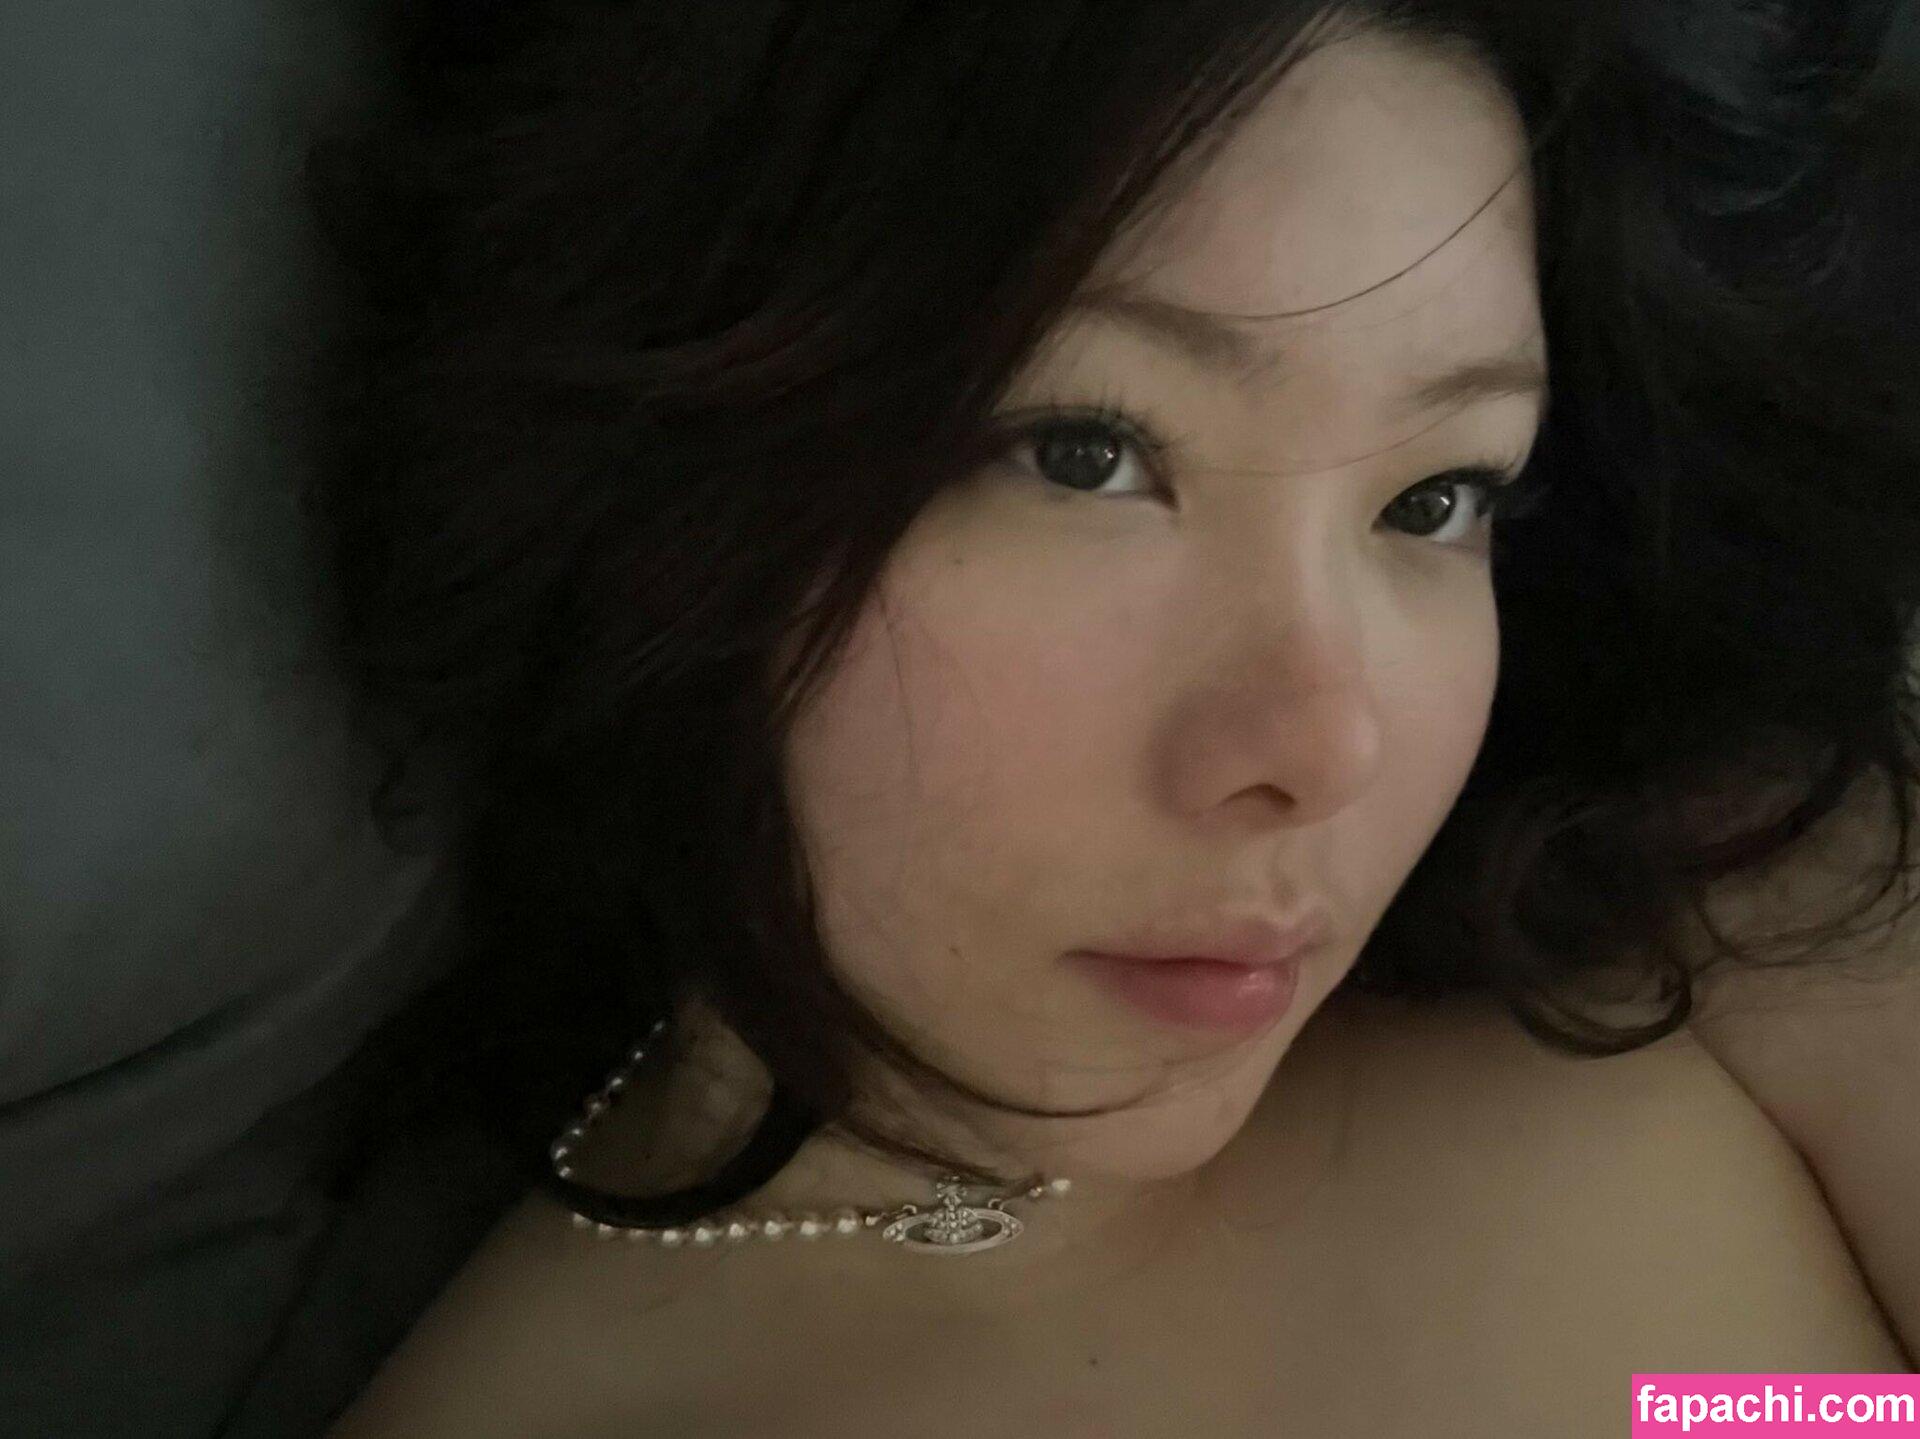 Júlia Nakamura / Mayumi / jumayumin1 leaked nude photo #0127 from OnlyFans/Patreon